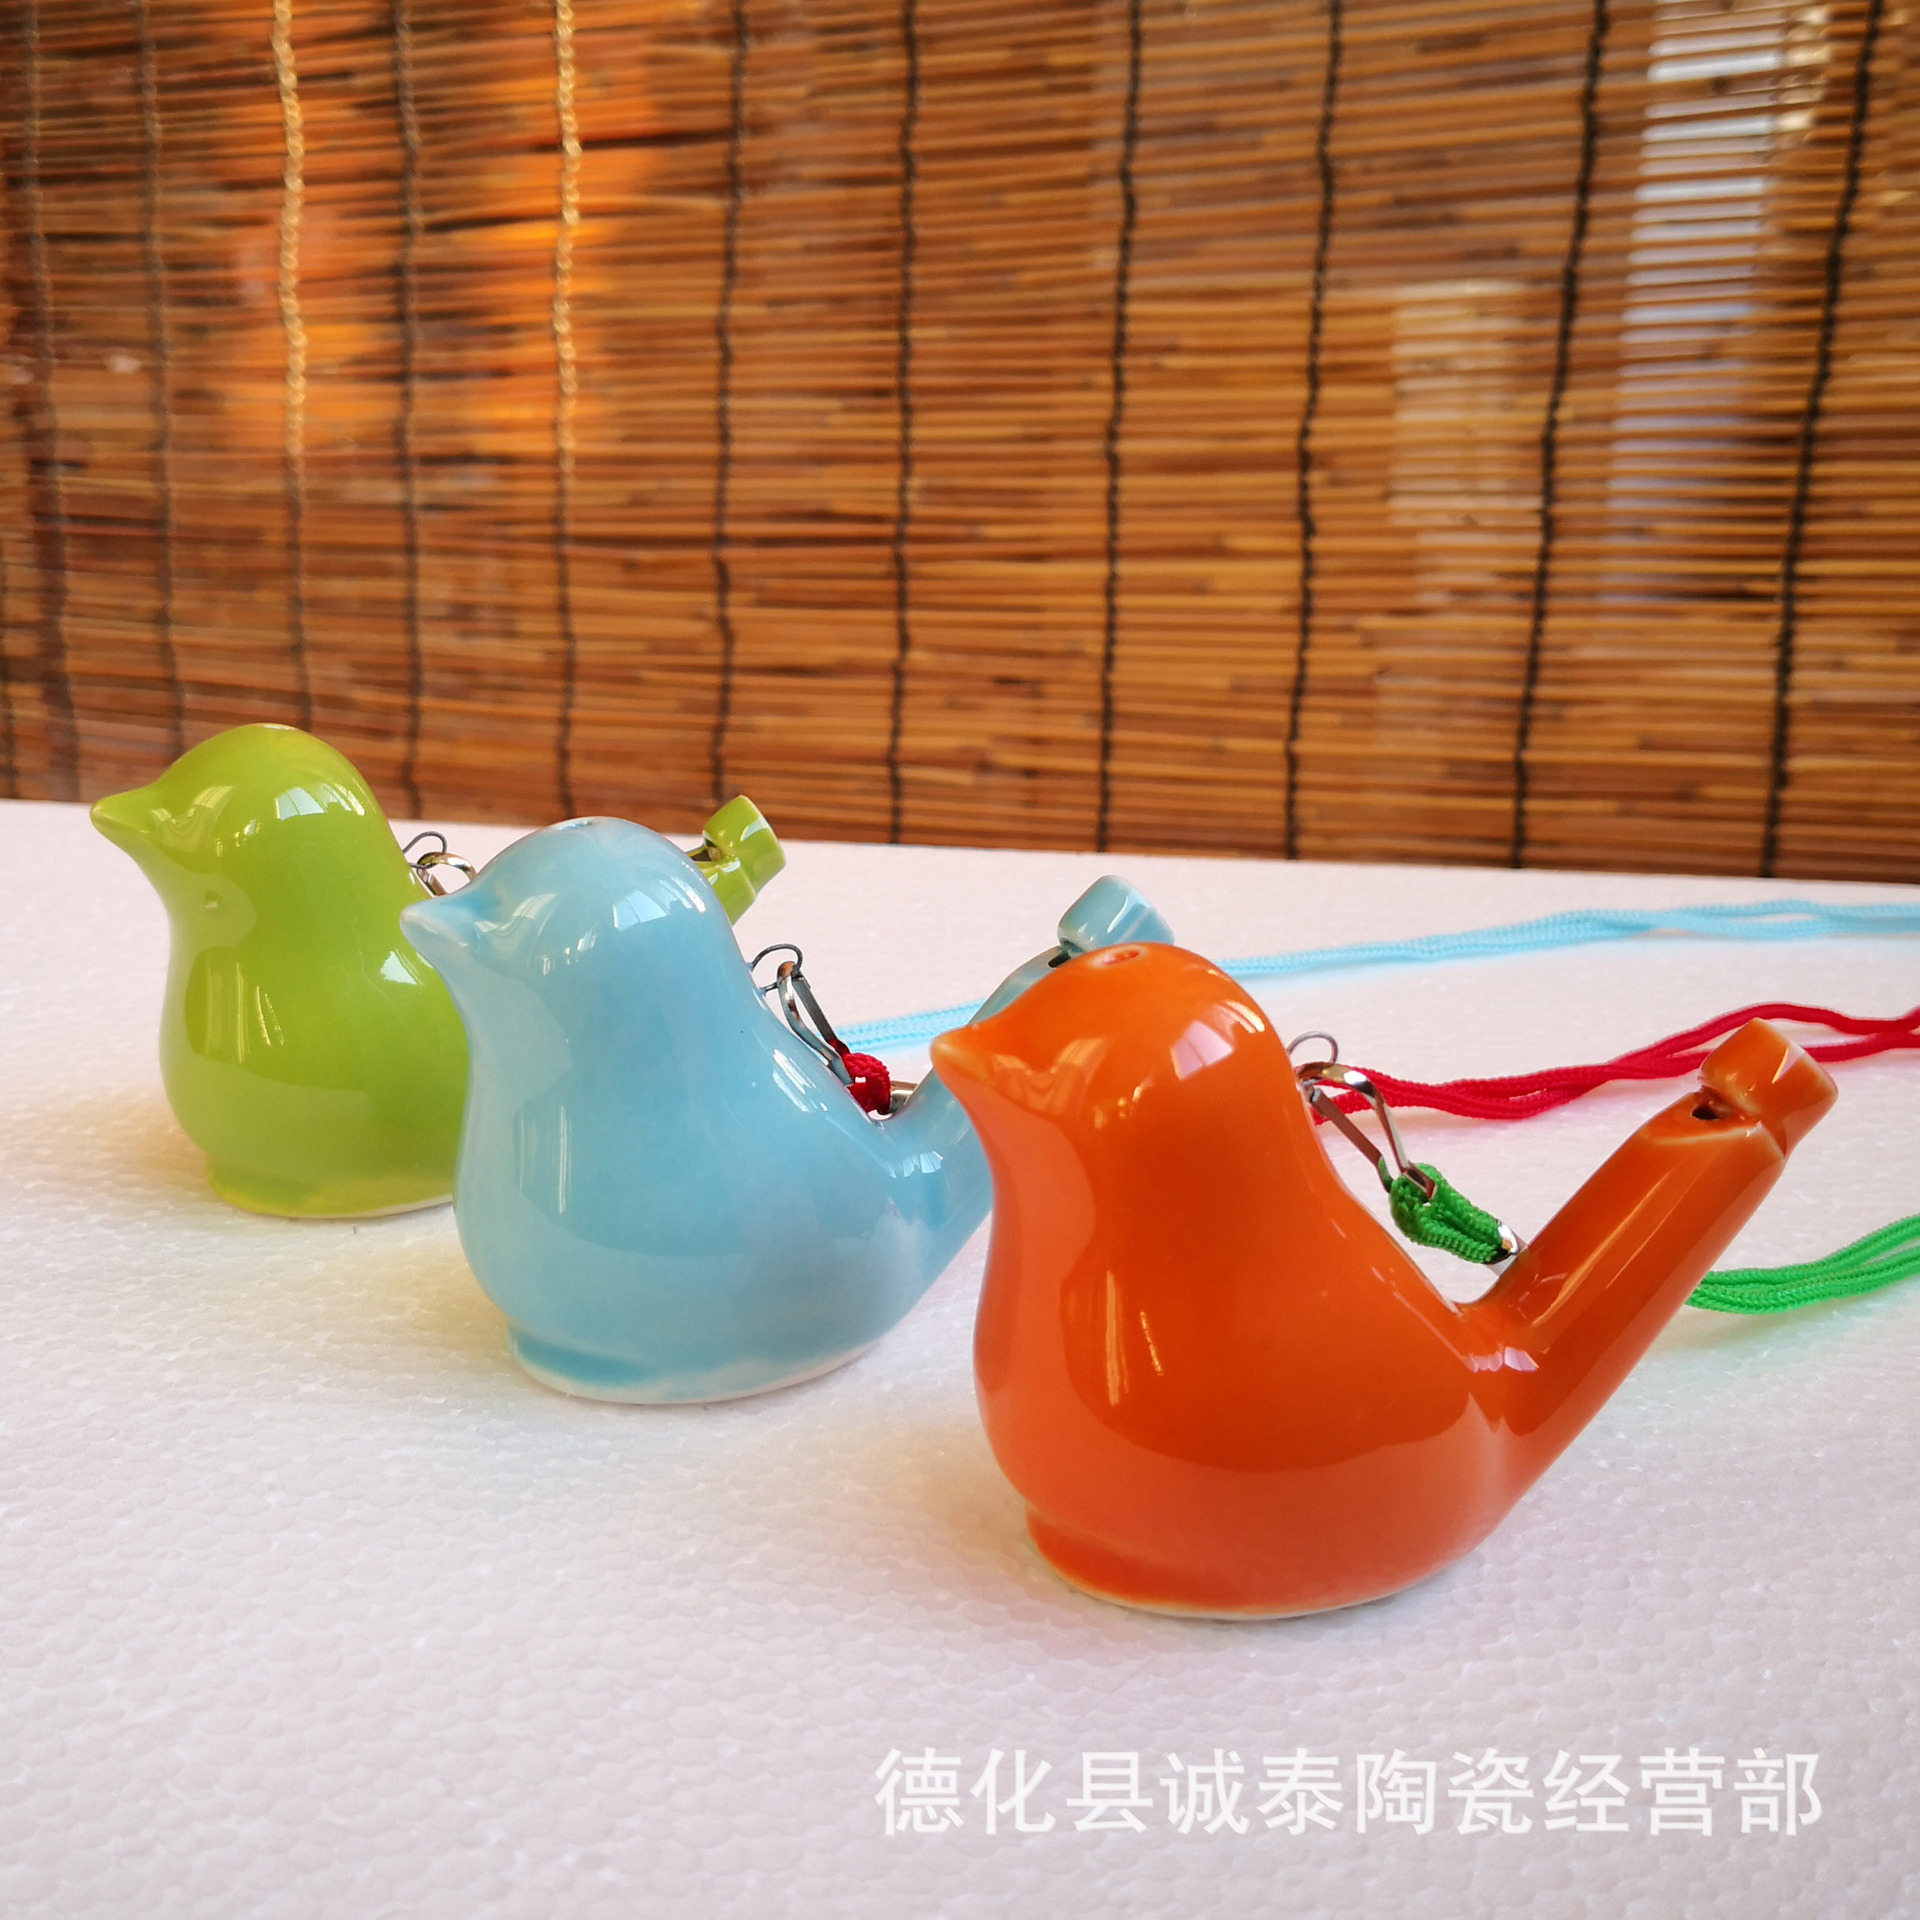 新款色釉陶瓷口哨音乐哨子创意儿童礼品玩具景区纪念品可设计logo